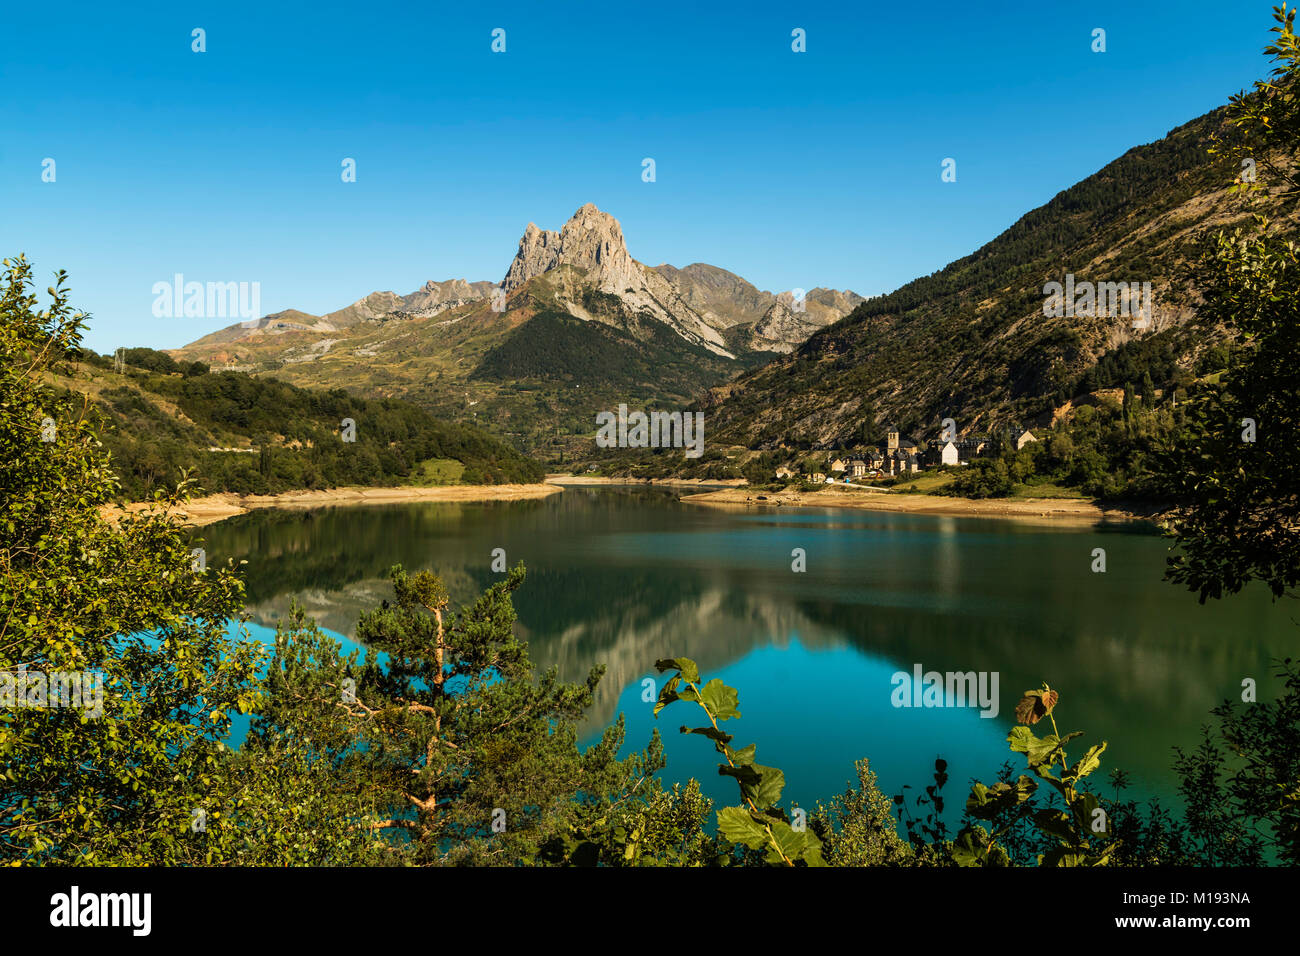 Lanuza See & Dorf- & Pena Foratata Peak im malerischen Oberen Tena Tal. Sallent de Gallego, Pyrenäen, Provinz Huesca, Spanien Stockfoto